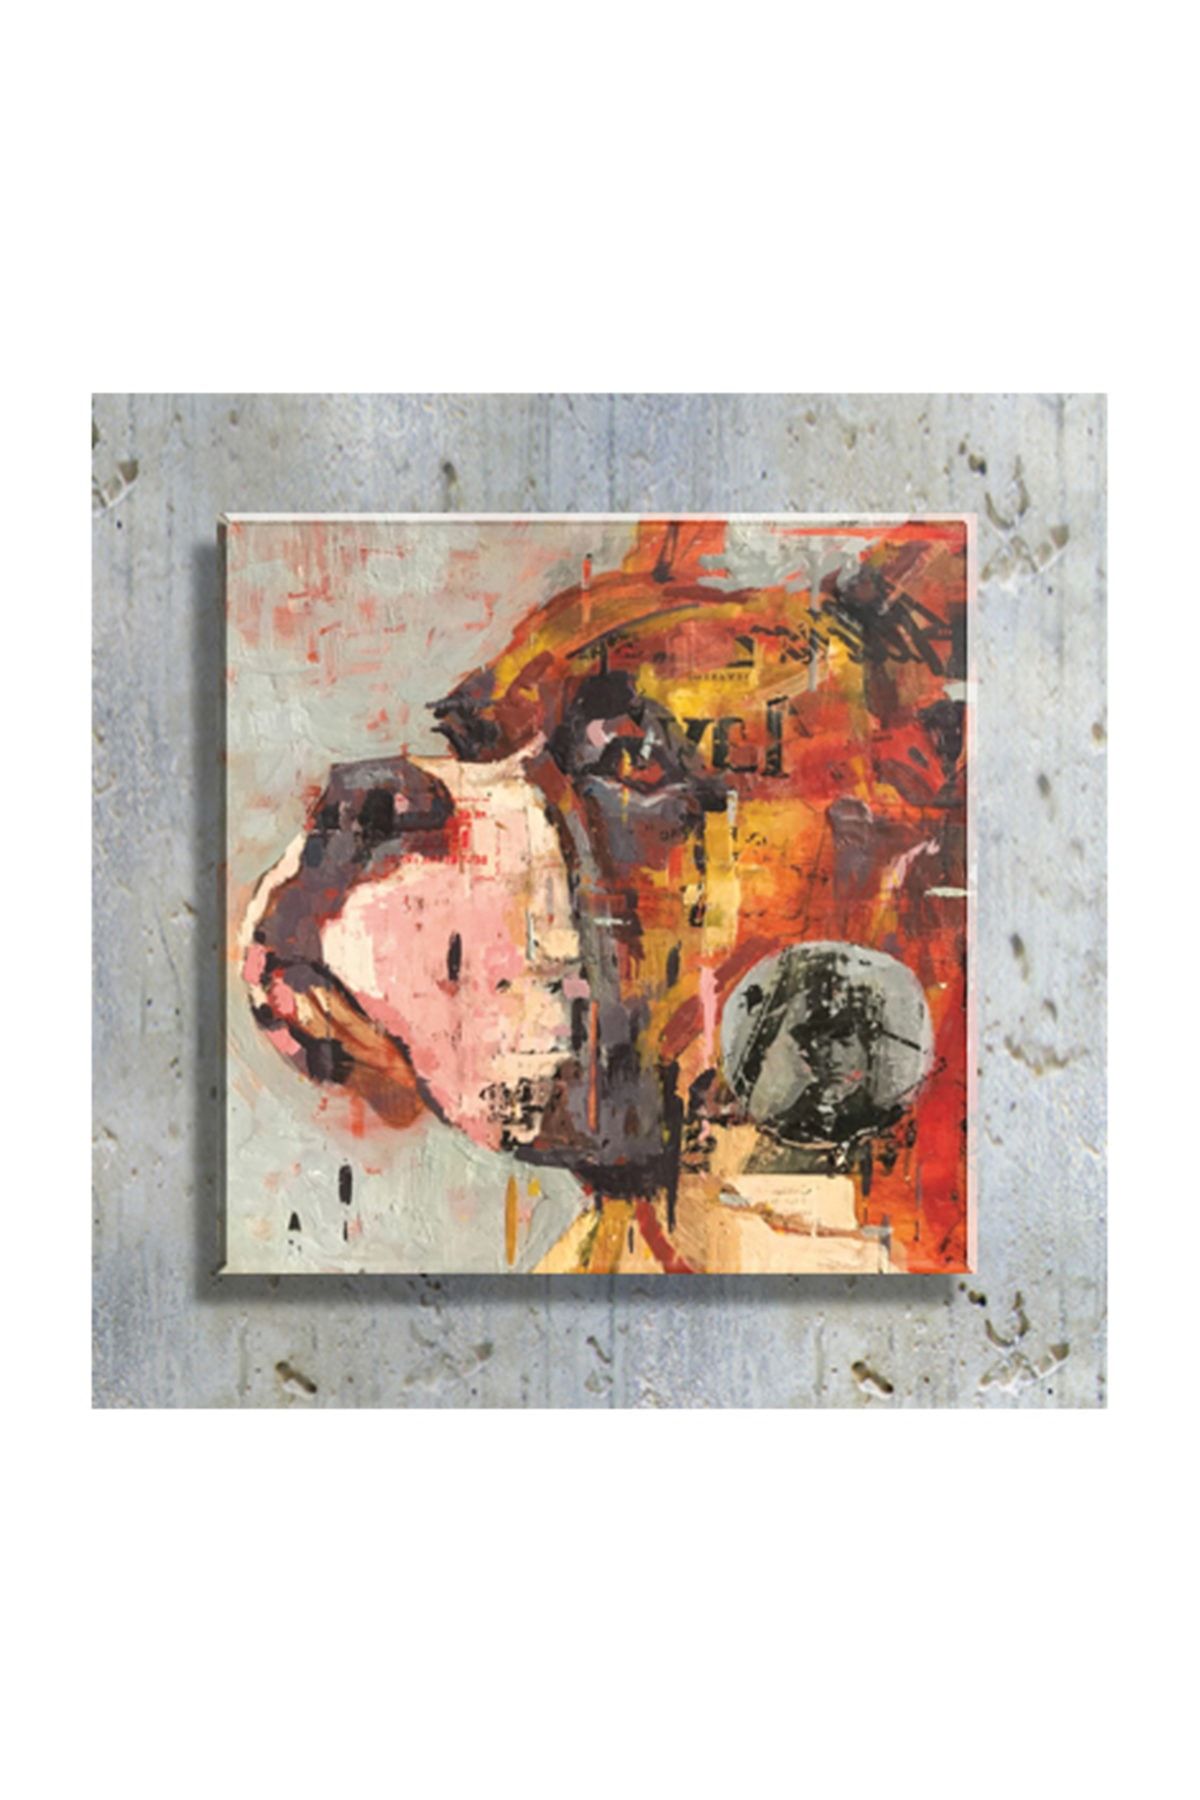 mağazacım Anonim Köpek Portre Yağlı Boya Reprodüksiyon 50 Cm X 50 Cm Kanvas Tablo Tbl1060